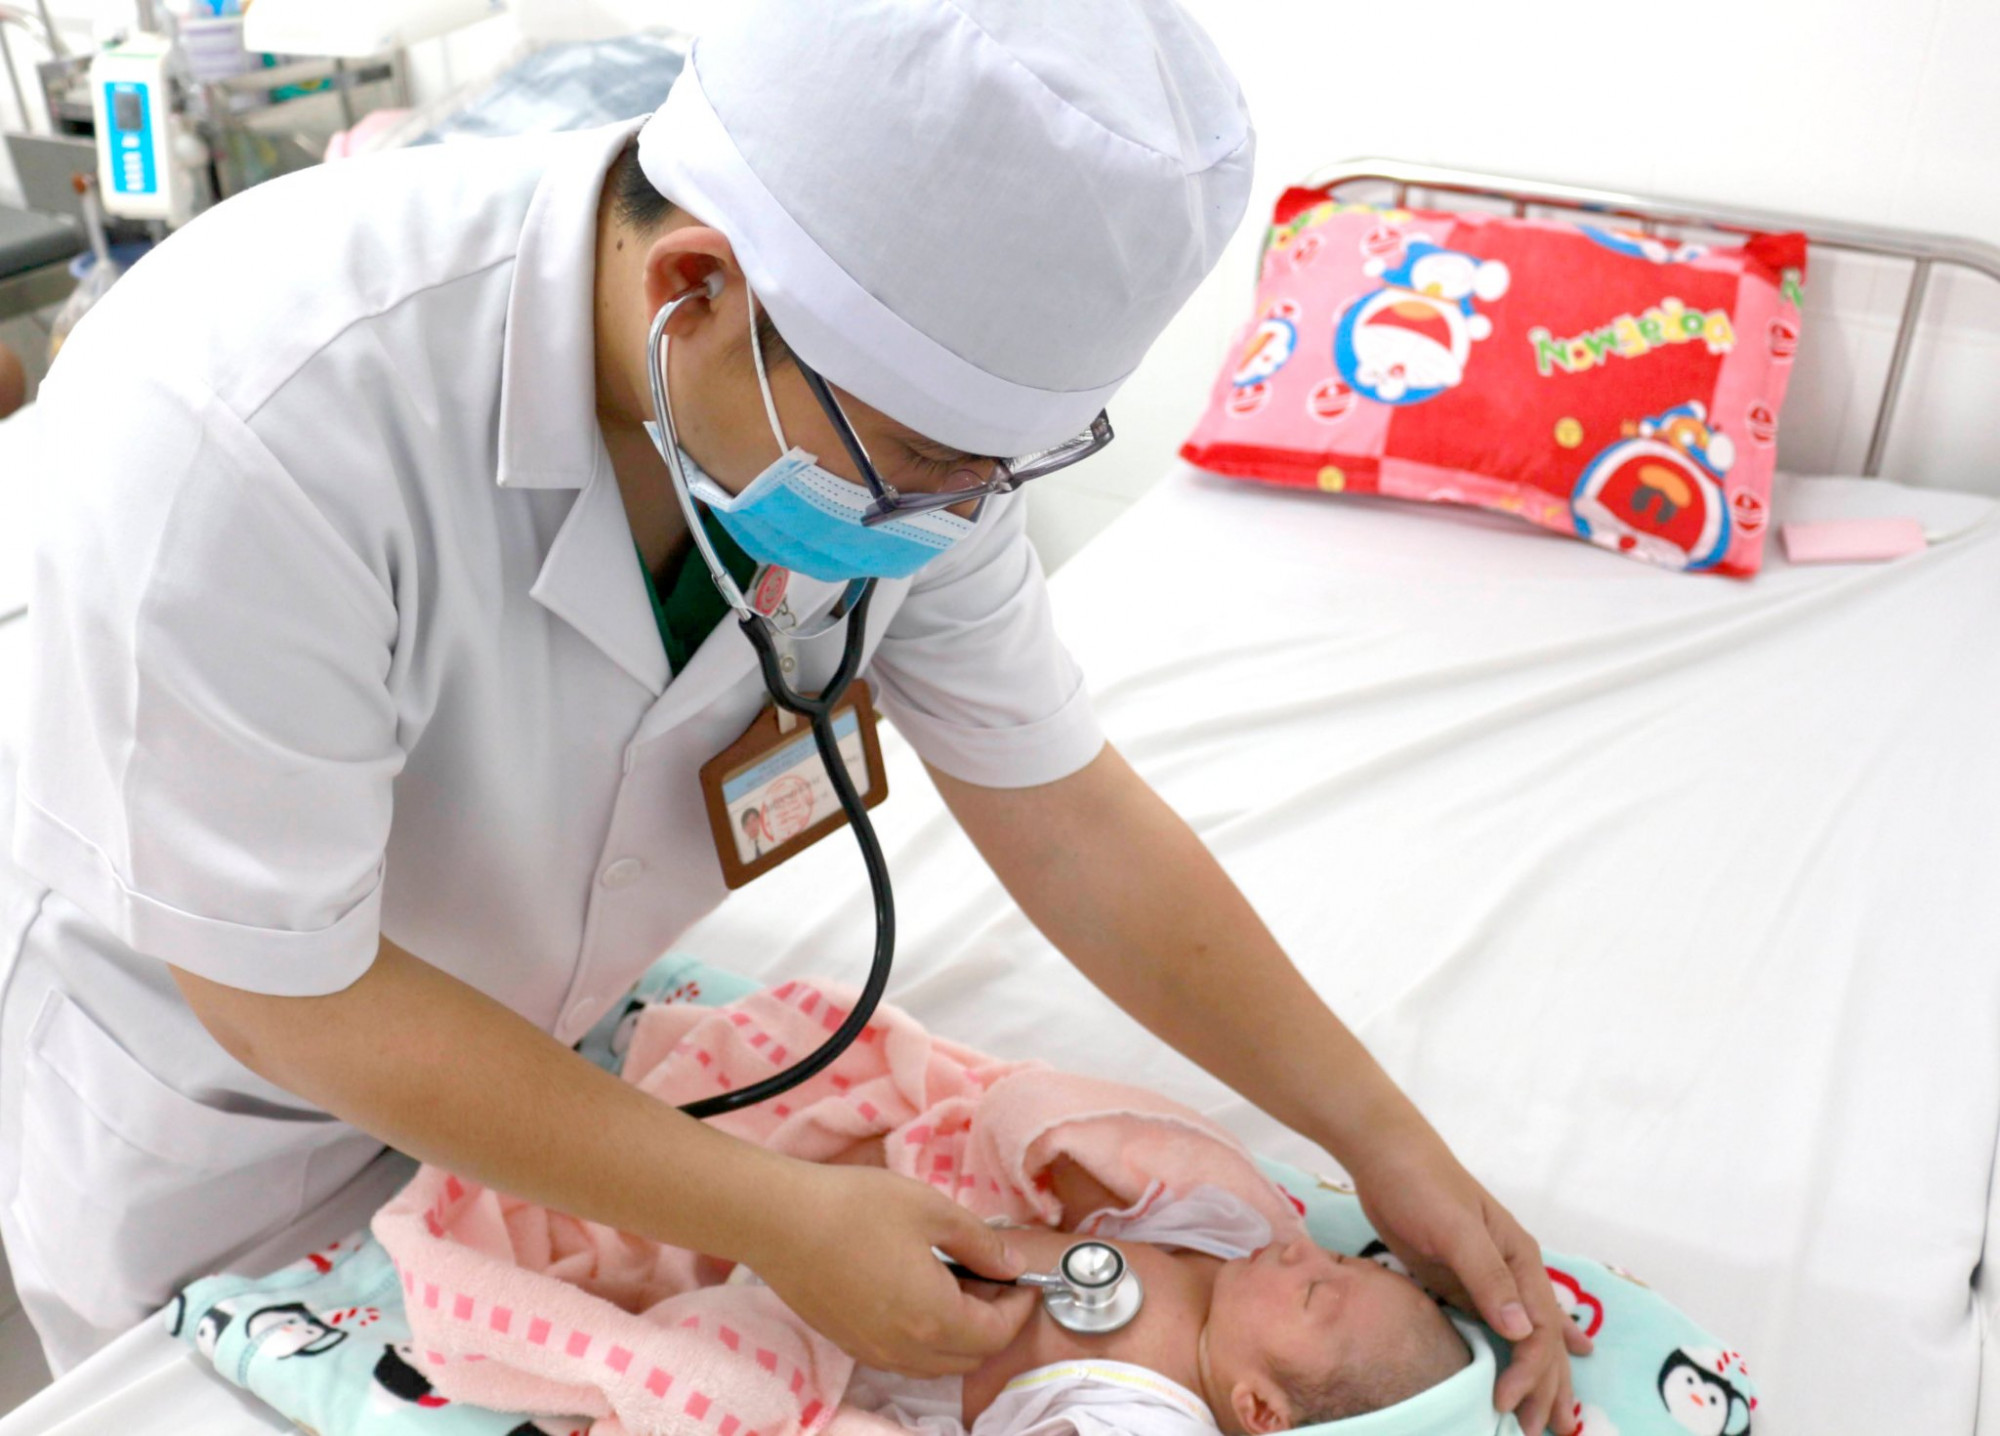 Bác sĩ khoa Nhi Sơ sinh thăm khám đánh giá sức khỏe con của sản phụ Nguyễn Thị T.N, ngụ tỉnh Vĩnh Long trước khi xuất viện